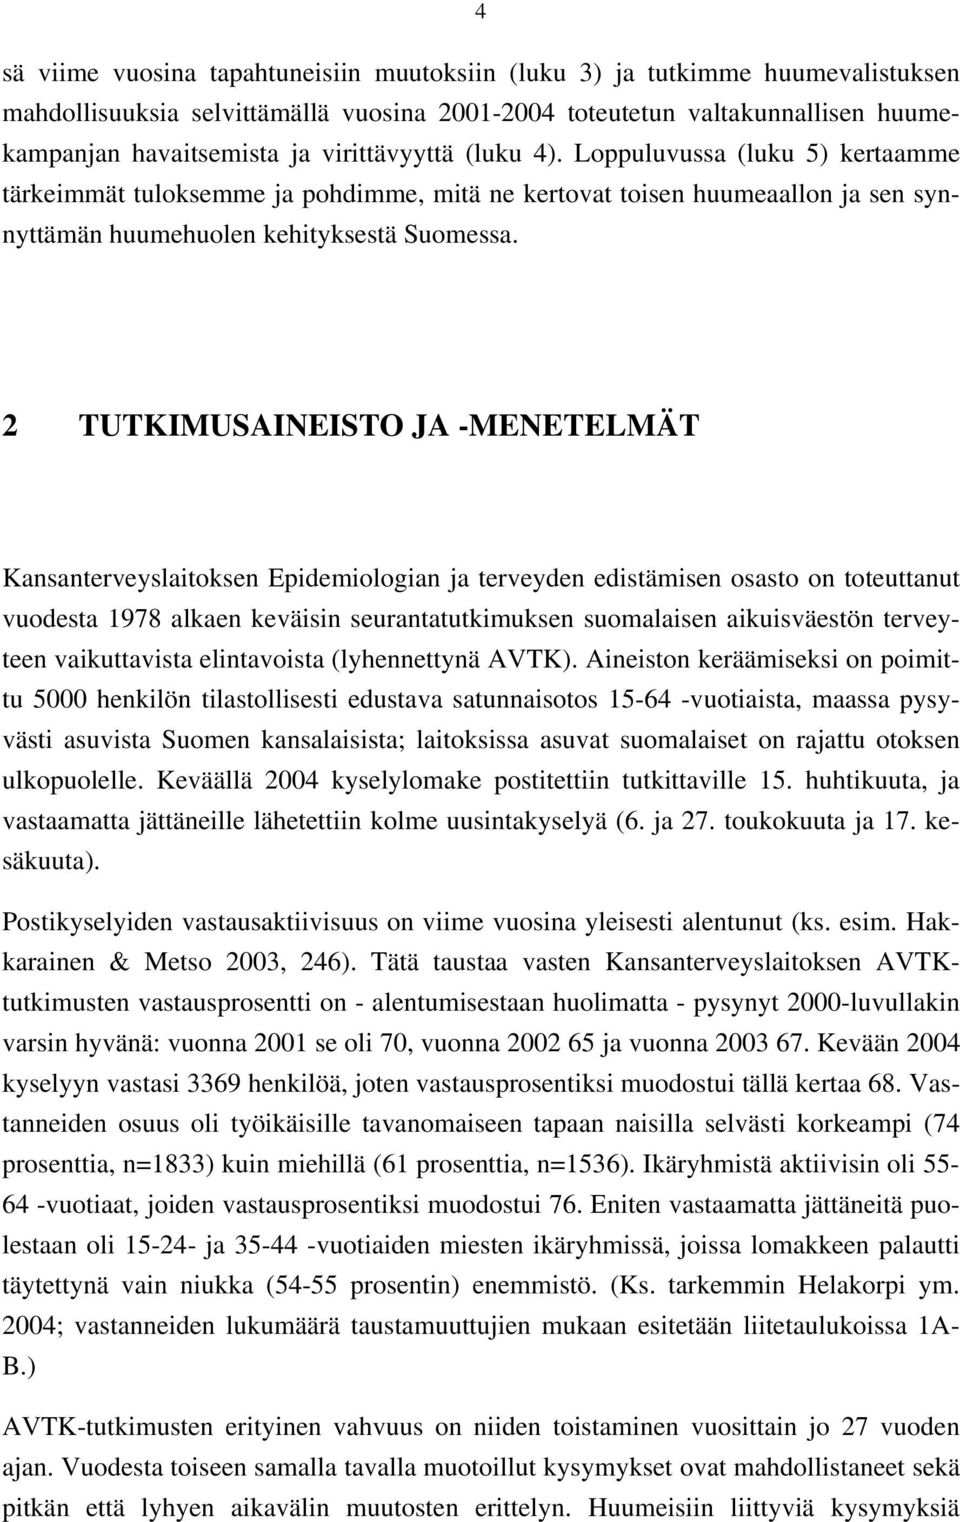 2 TUTKIMUSAINEISTO JA -MENETELMÄT Kansanterveyslaitoksen Epidemiologian ja terveyden edistämisen osasto on toteuttanut vuodesta 1978 alkaen keväisin seurantatutkimuksen suomalaisen aikuisväestön